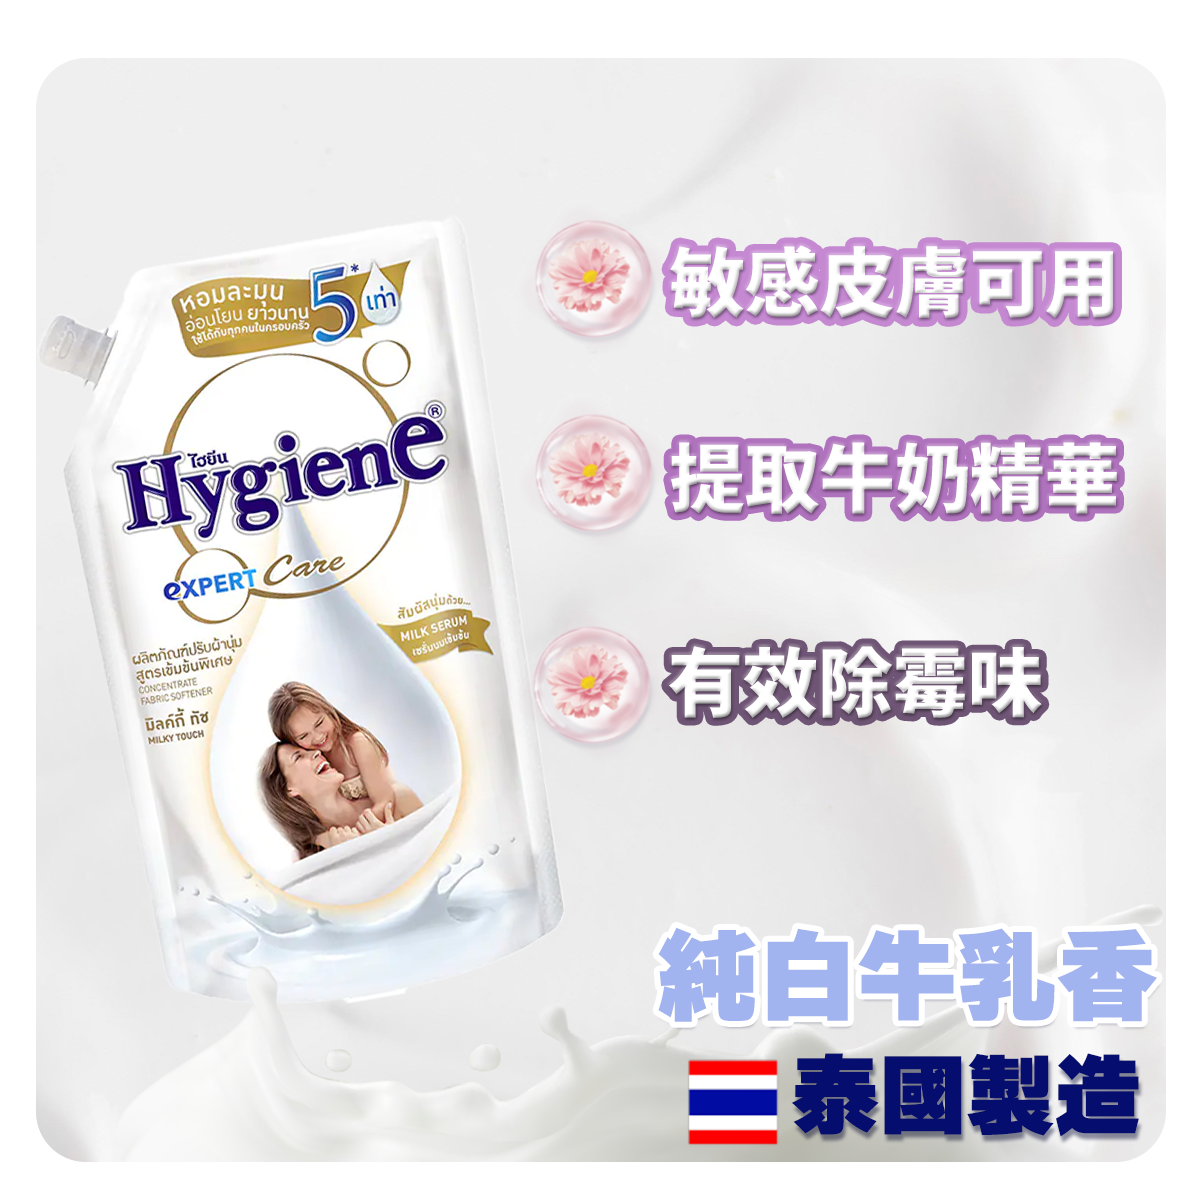 柔順劑 520 mL裝 - 純白牛乳香味